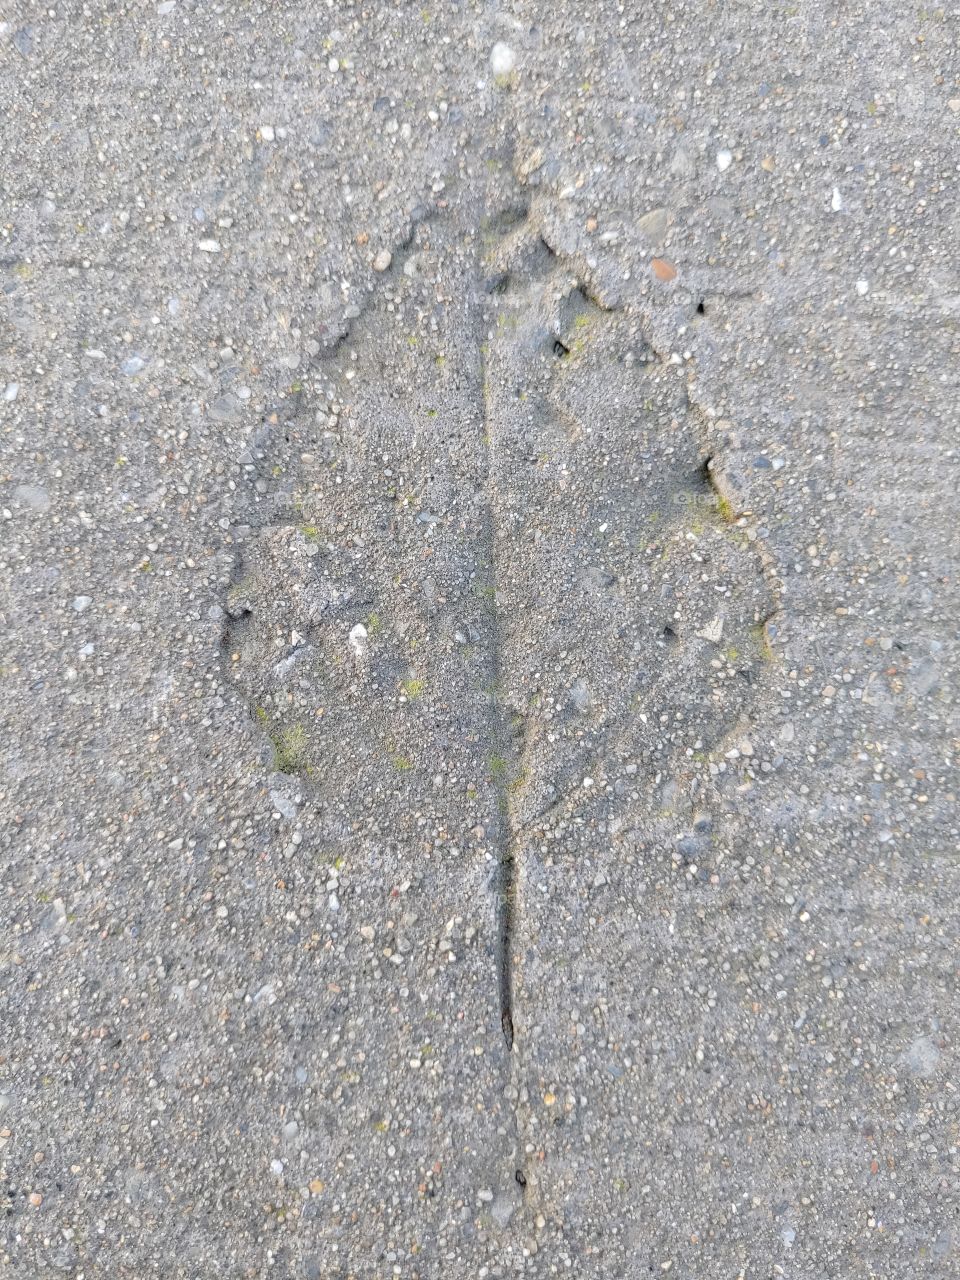 Print of a leaf in stone